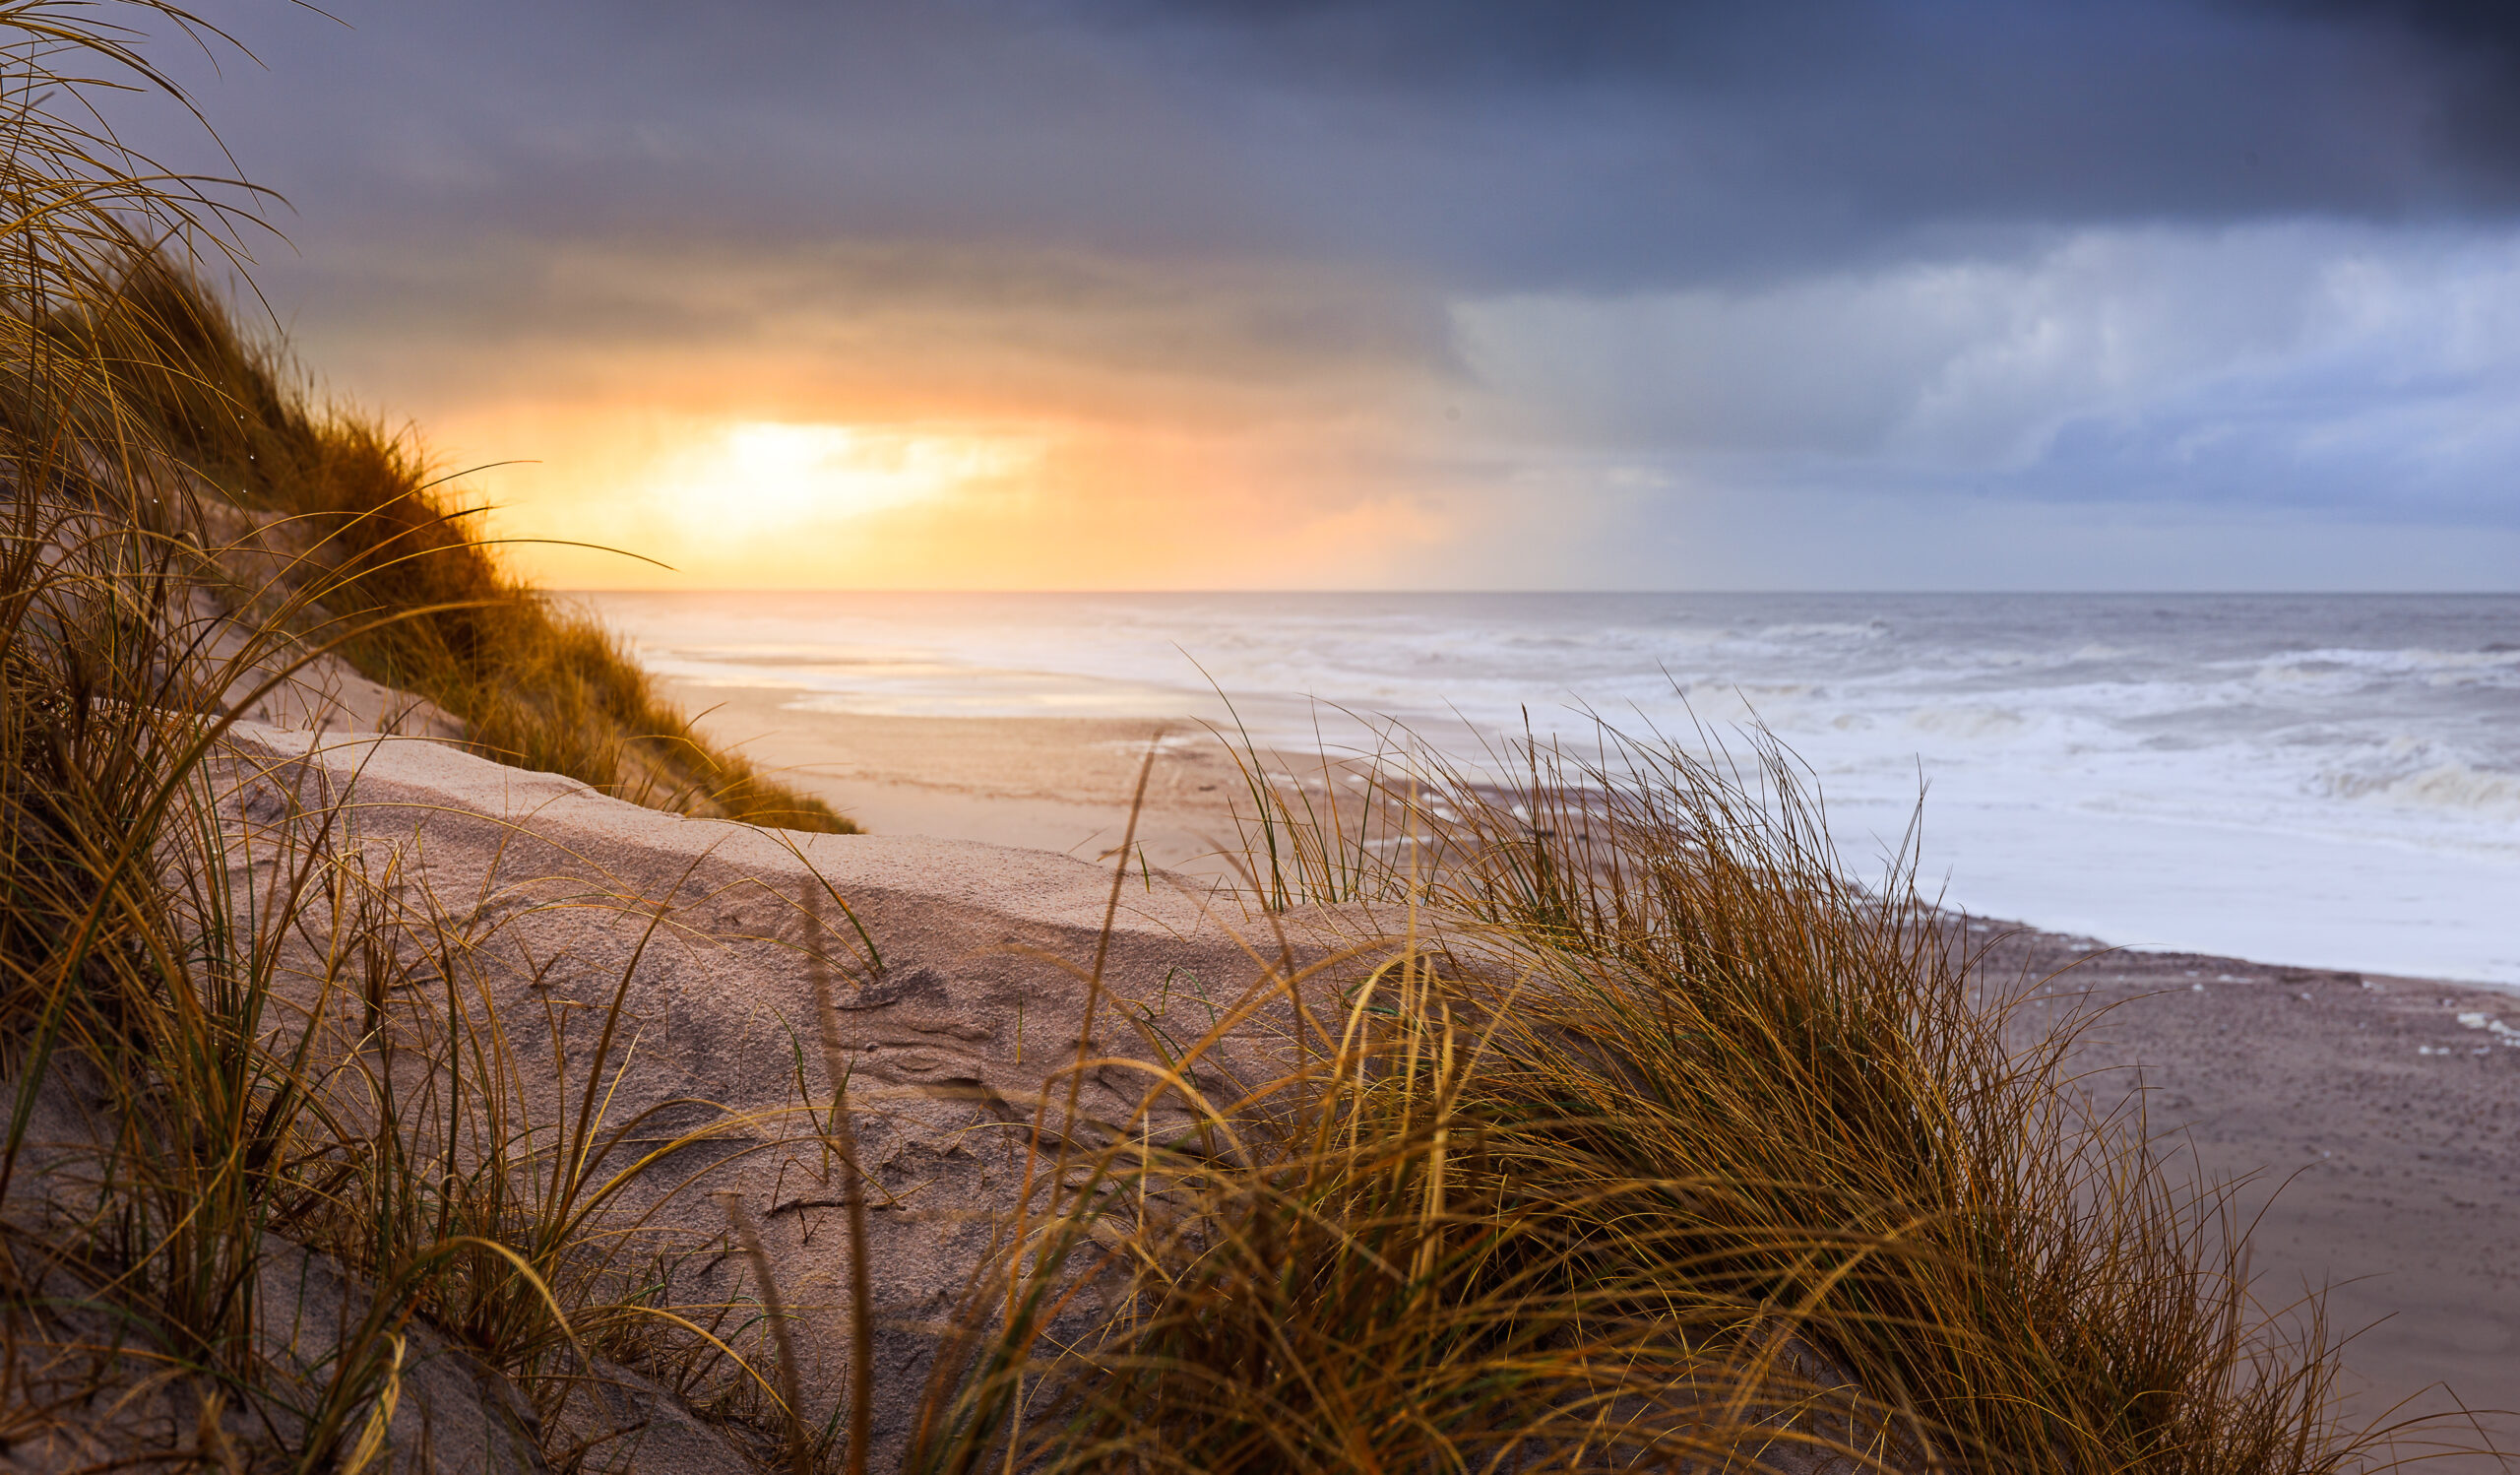 Der Strand in HVide Sande. Foto: Shutterstock/rphstock